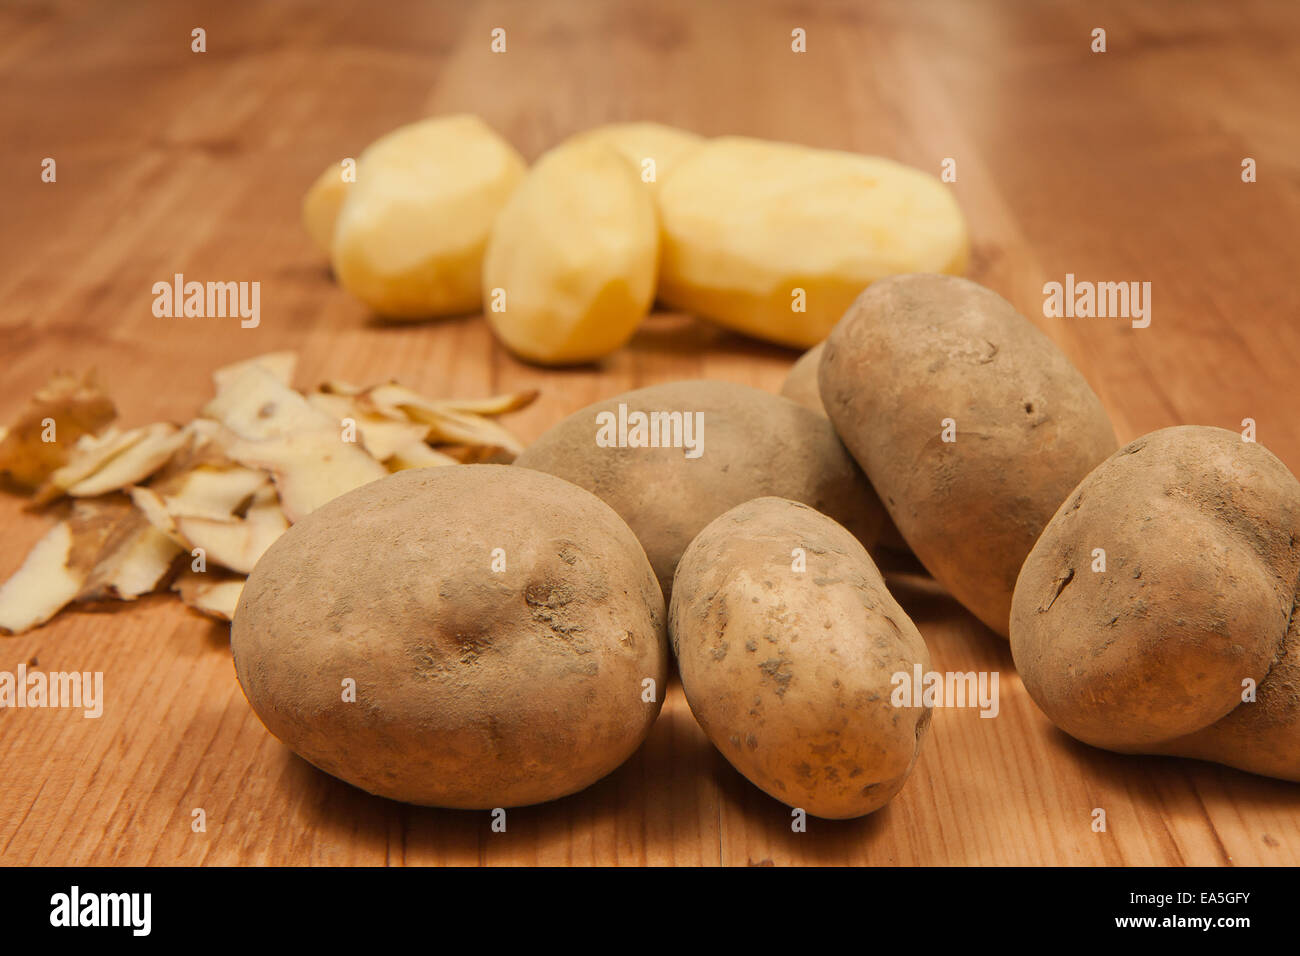 White peeled potatos. Potato peelings Stock Photo